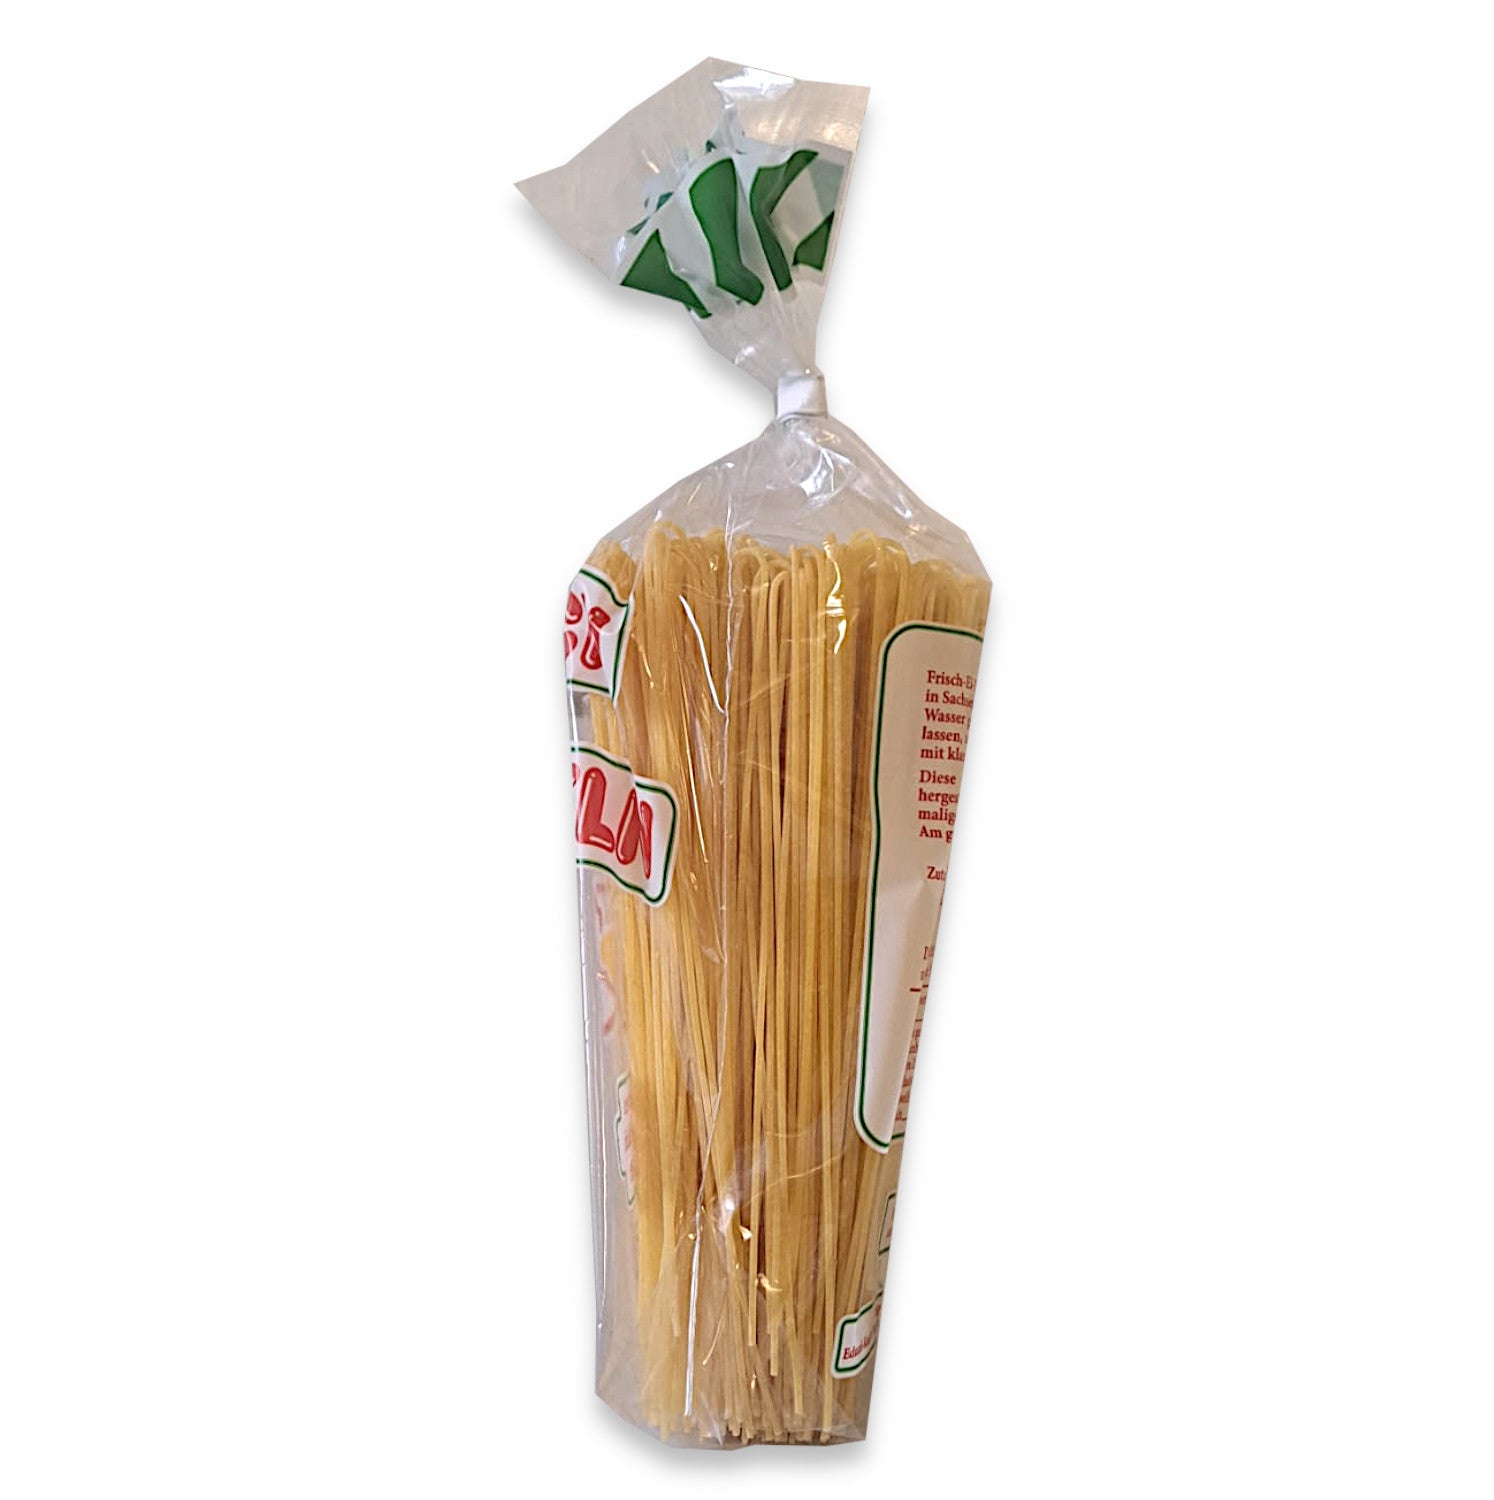 Frischei Nudeln Hartweizen Spaghetti 250g